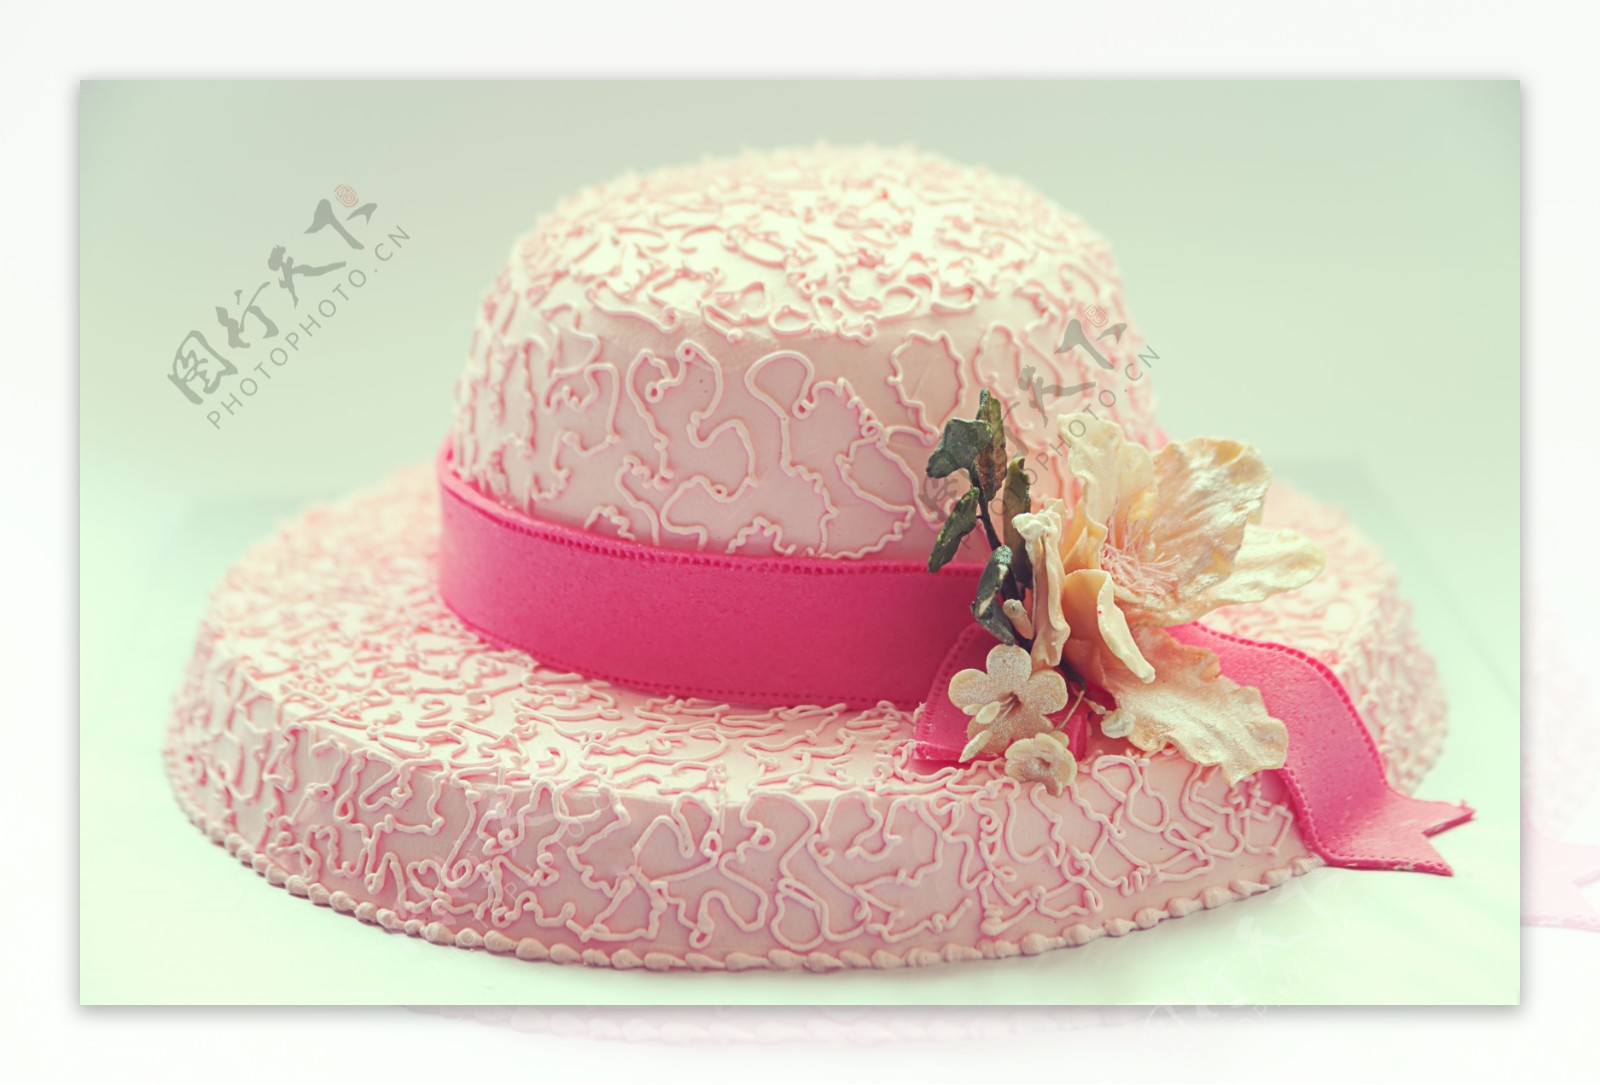 粉色帽子生日蛋糕图片